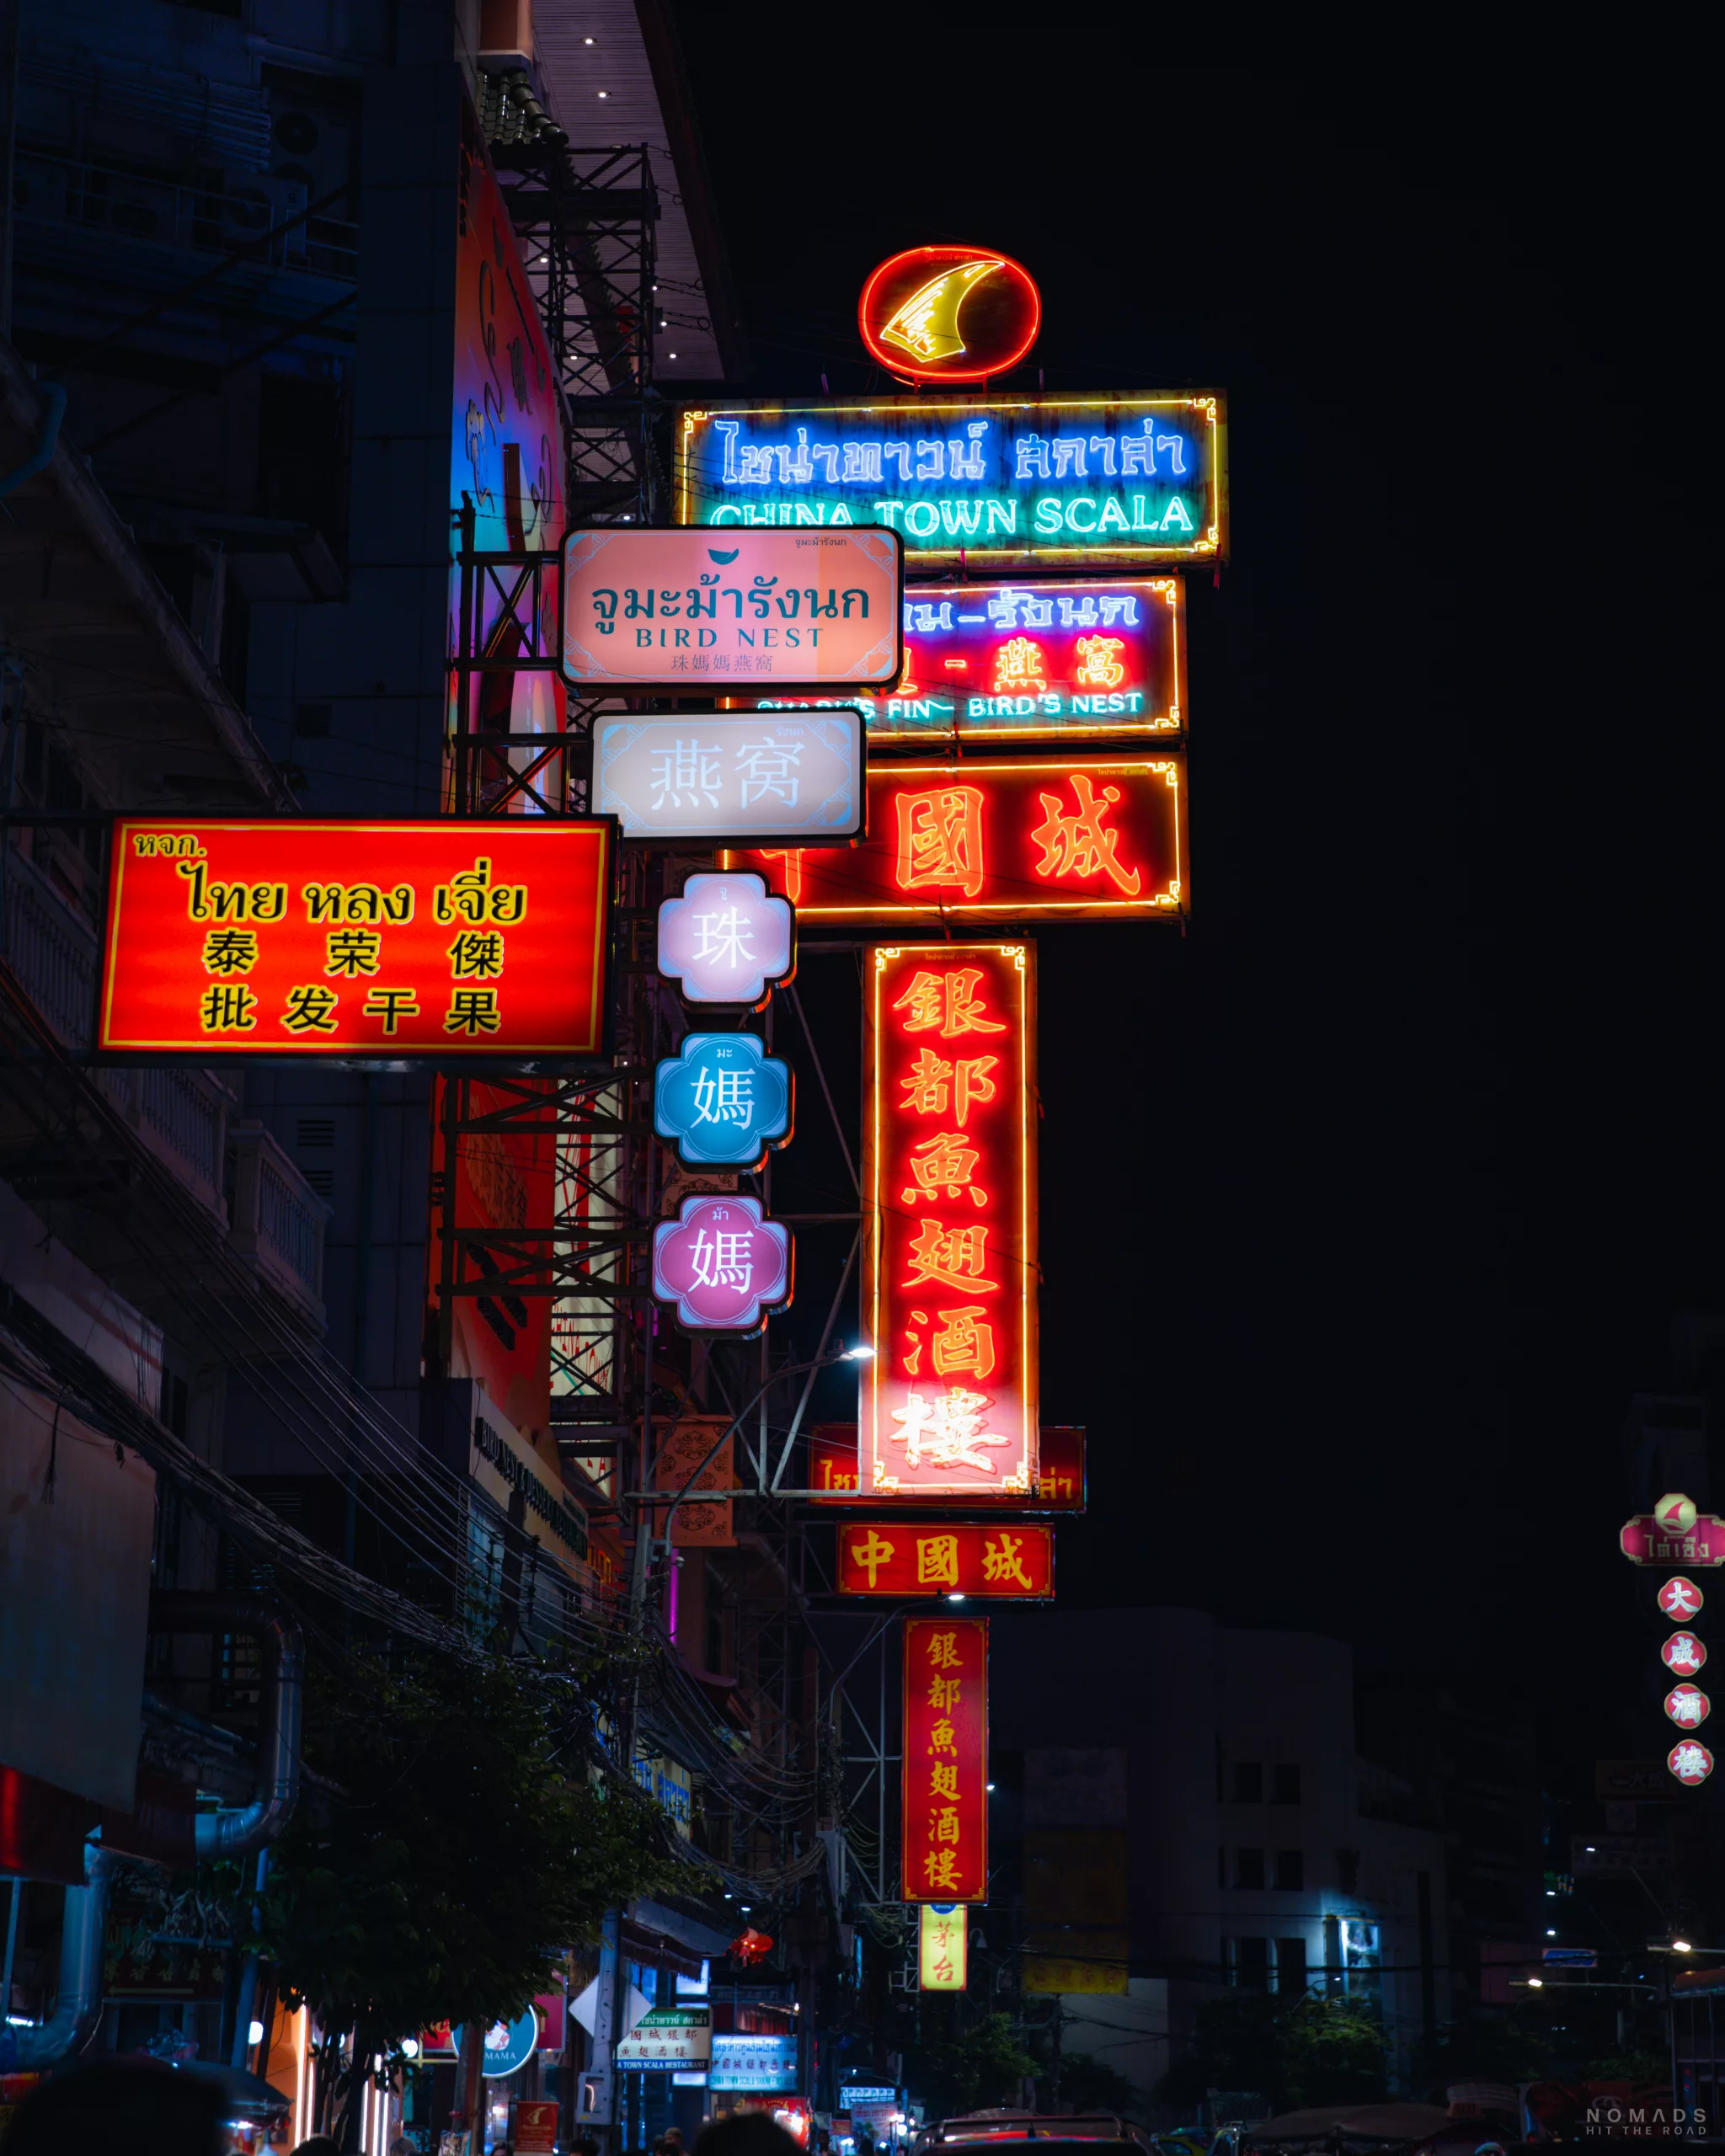 Neonlichter über den Straßen in Bangkok Chinatown bei Nacht